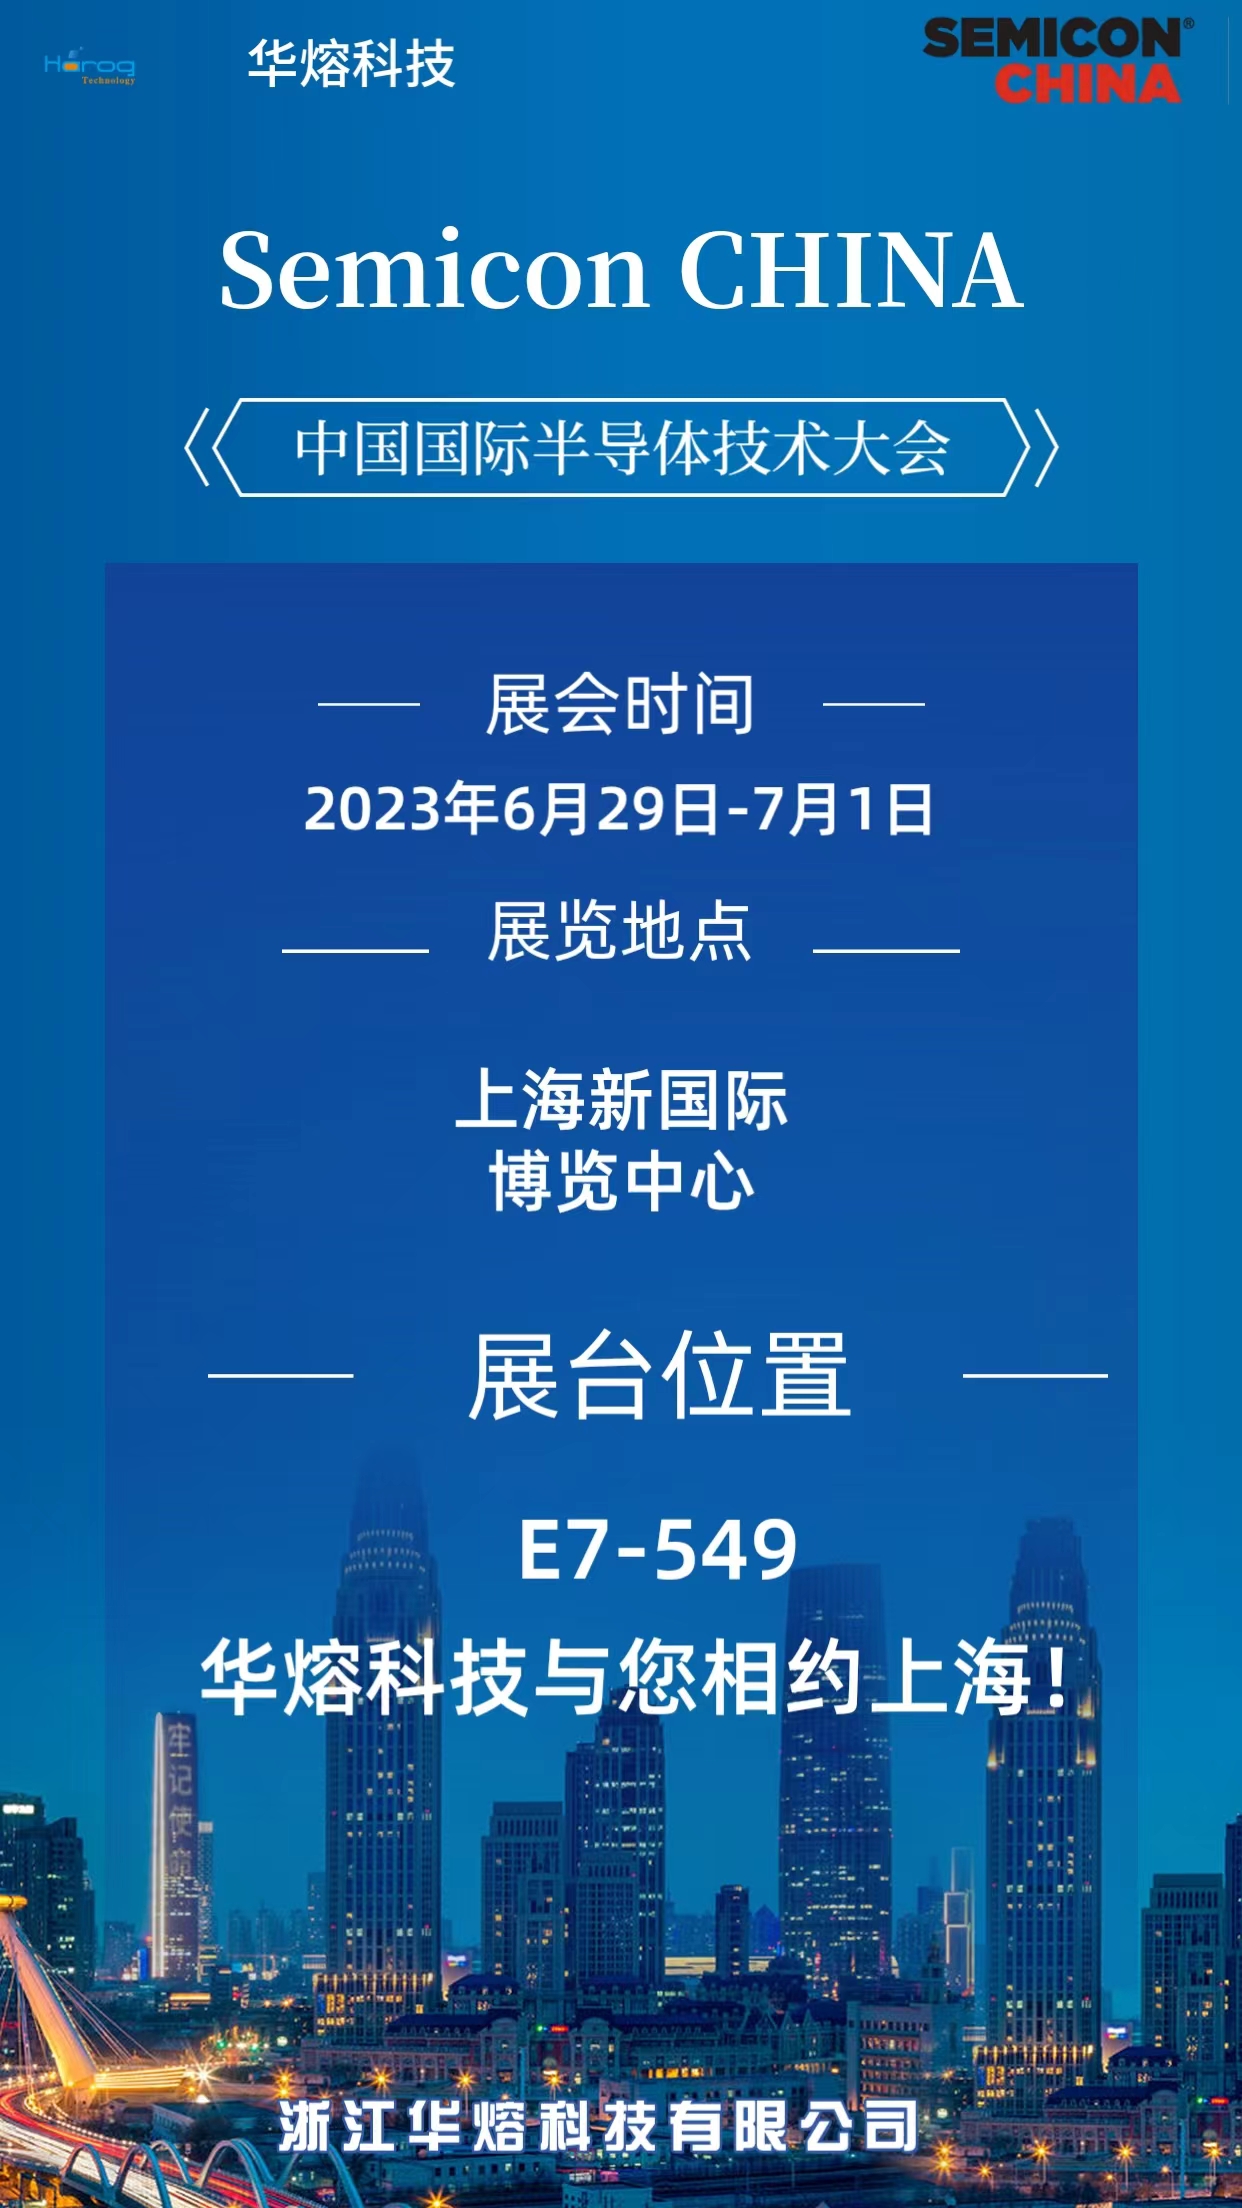 华熔科技参加2023中国国际半导体技术大会Semicon China 2023